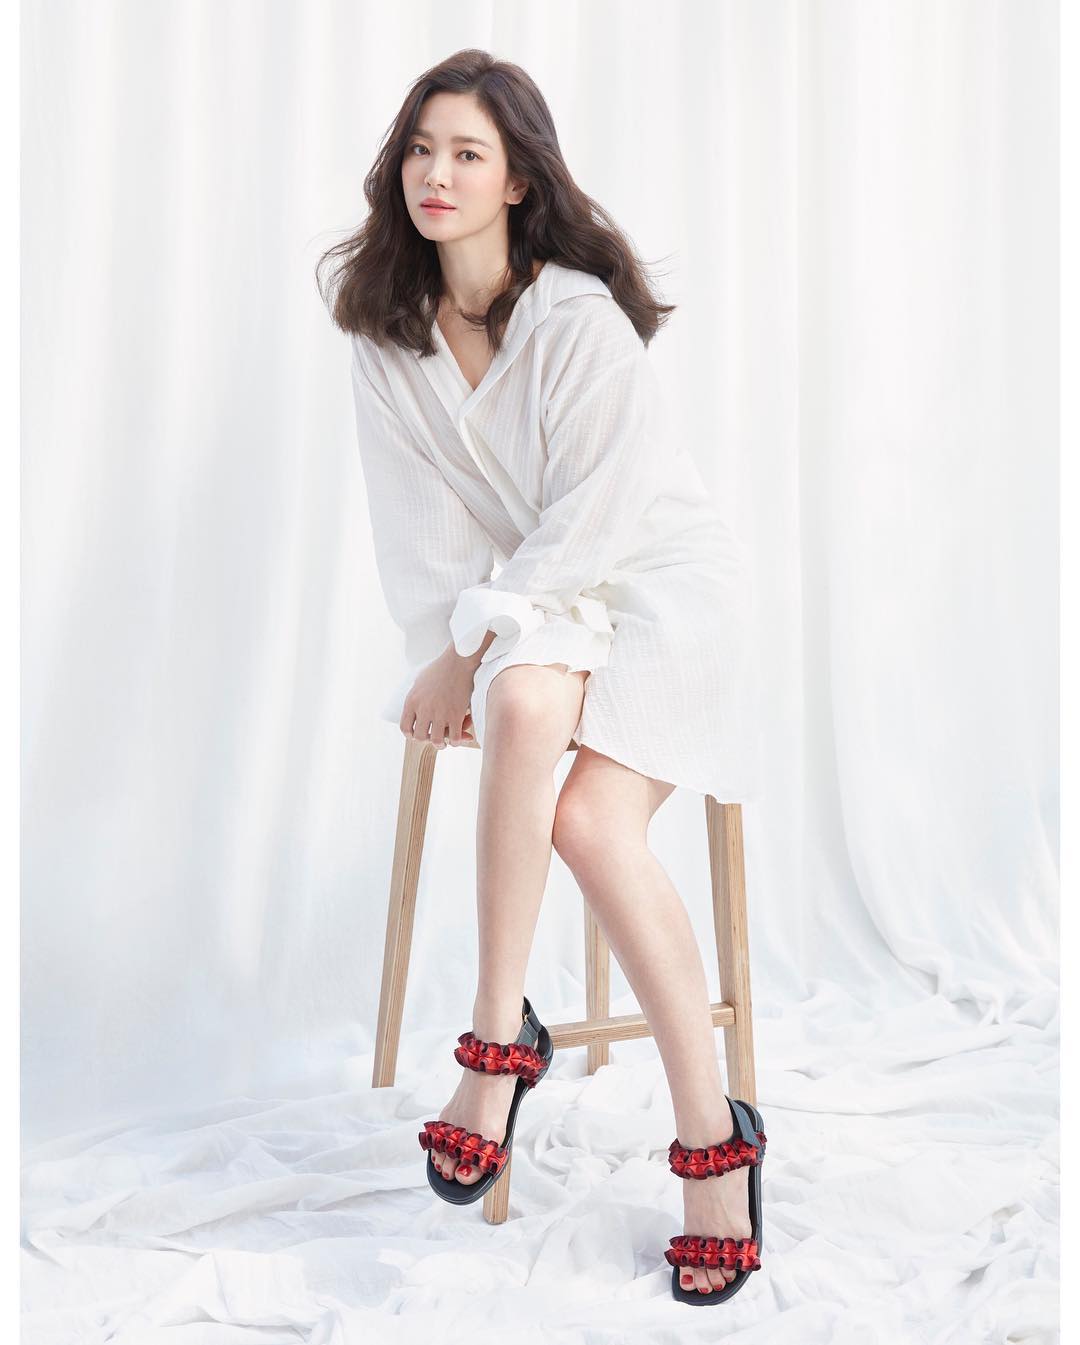 Bertubuh Porposional, 10 Aktris Korea Ini Cantik dengan Tinggi Semampai